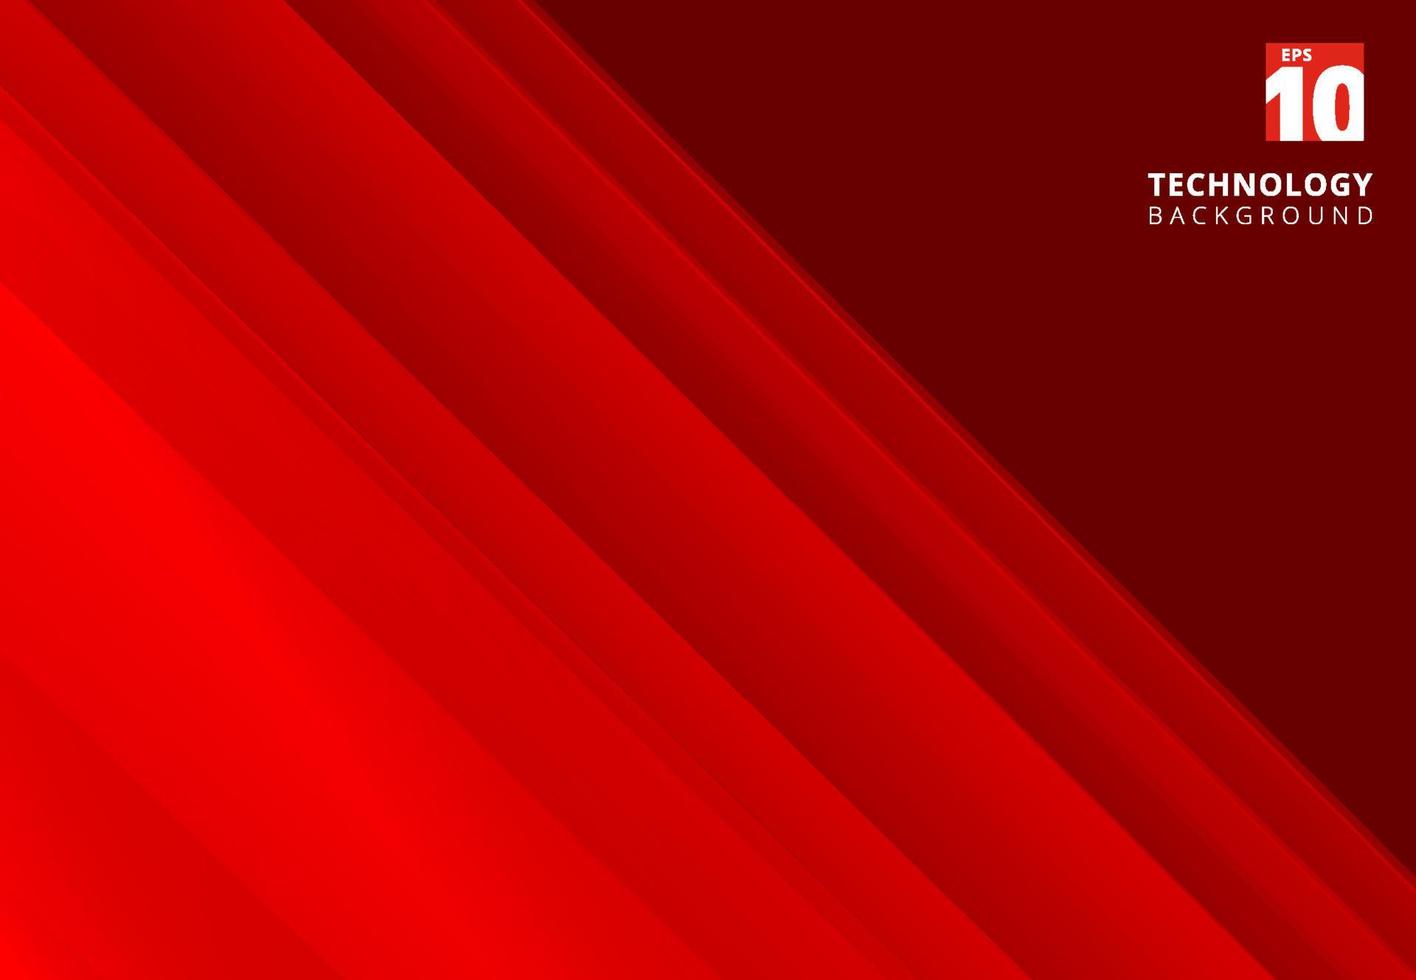 abstrakt röd bild som visar teknik med överlappande diagonala linjer. vektor